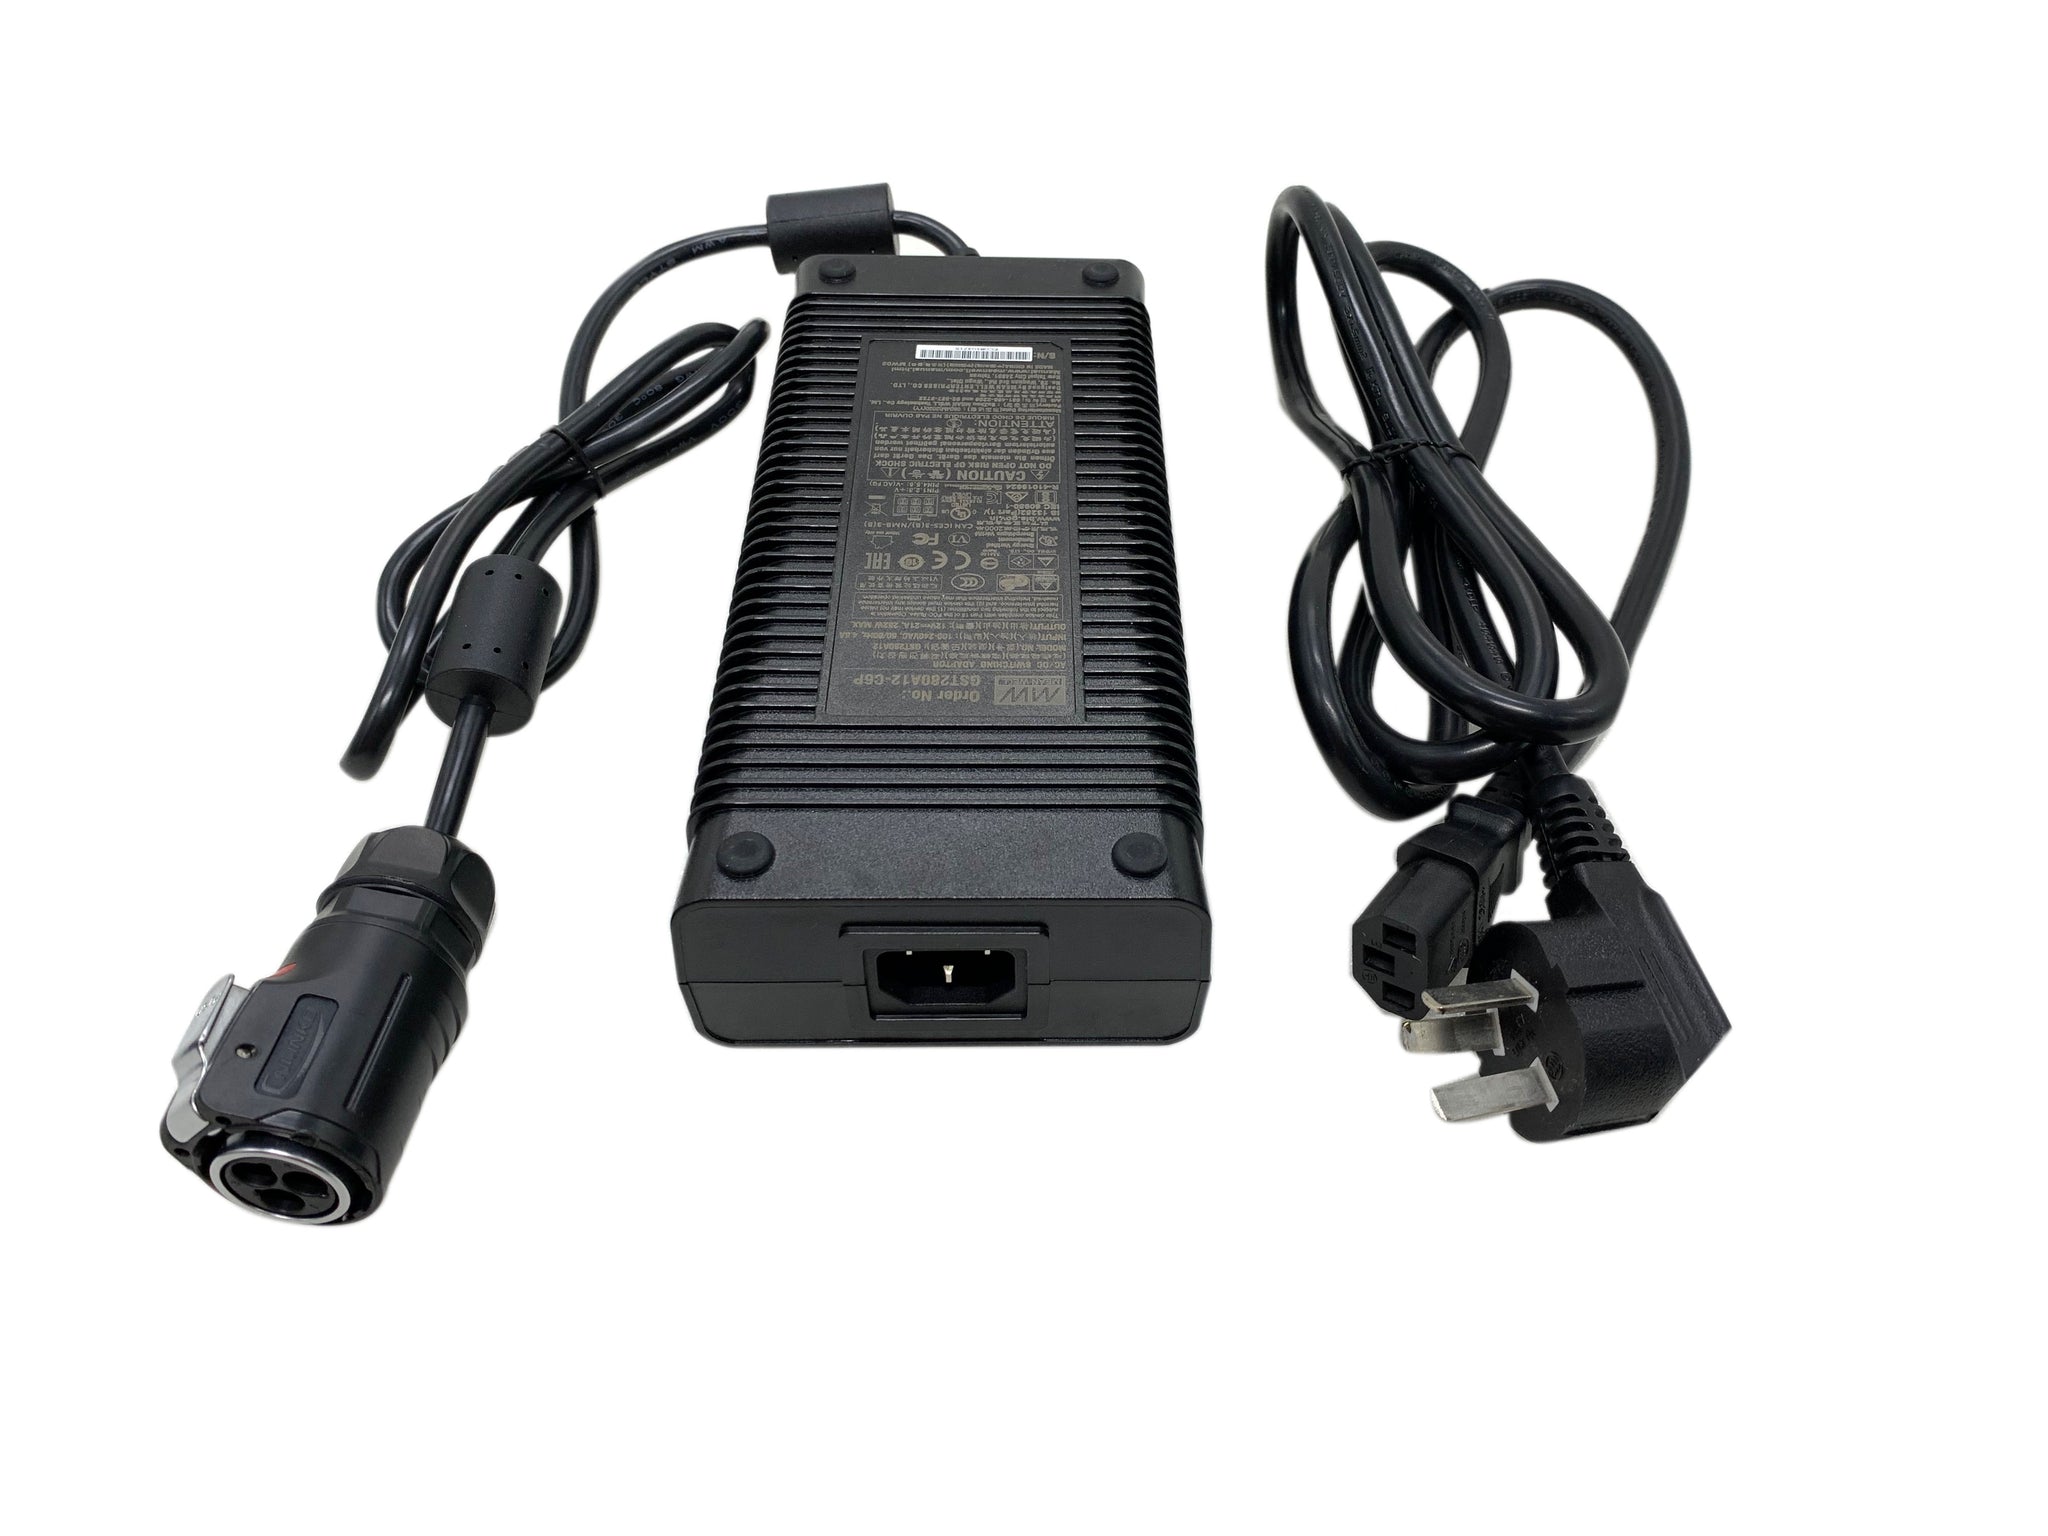 COMPCOOLER Power Adapter 110-220V to 12V